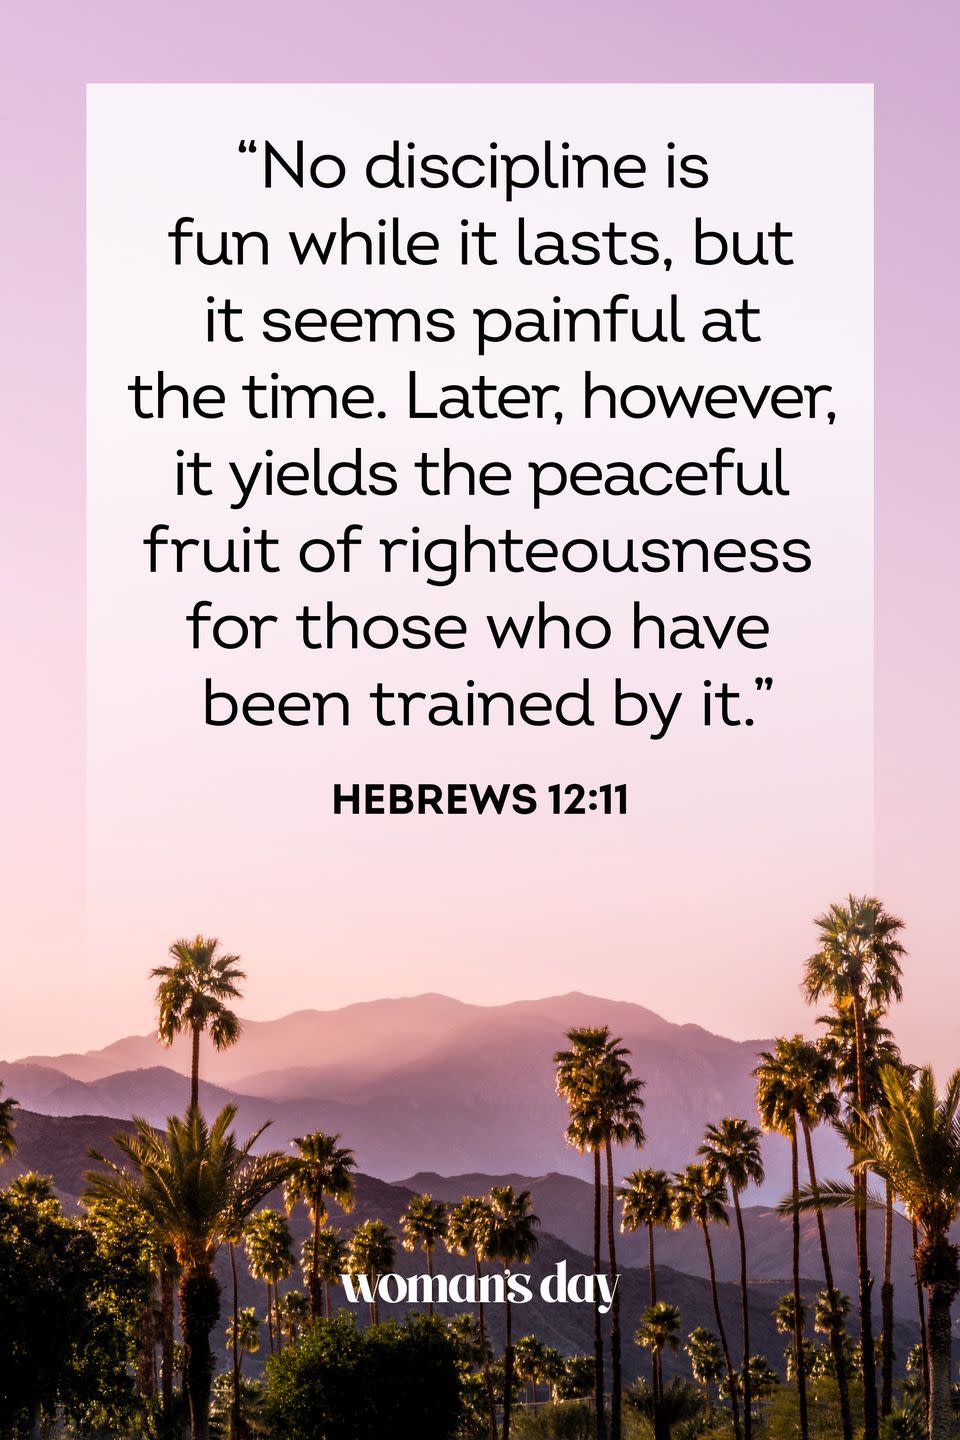 45) Hebrews 12:11